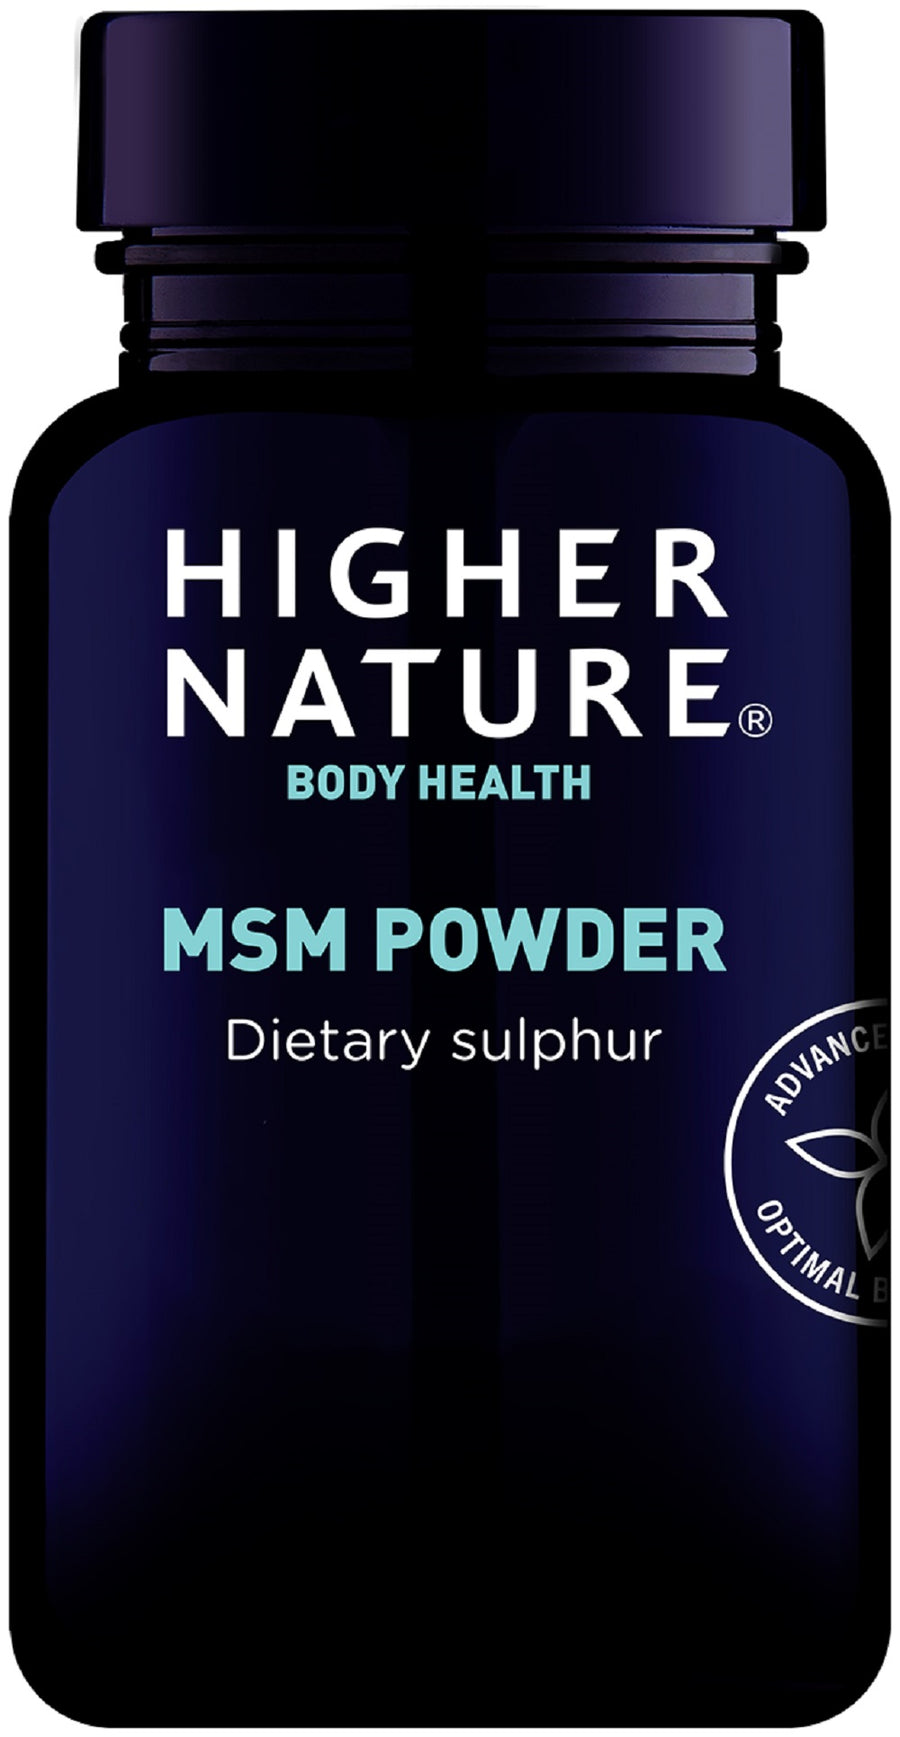 Higher Nature MSM Powder Dietary Sulphur 200g